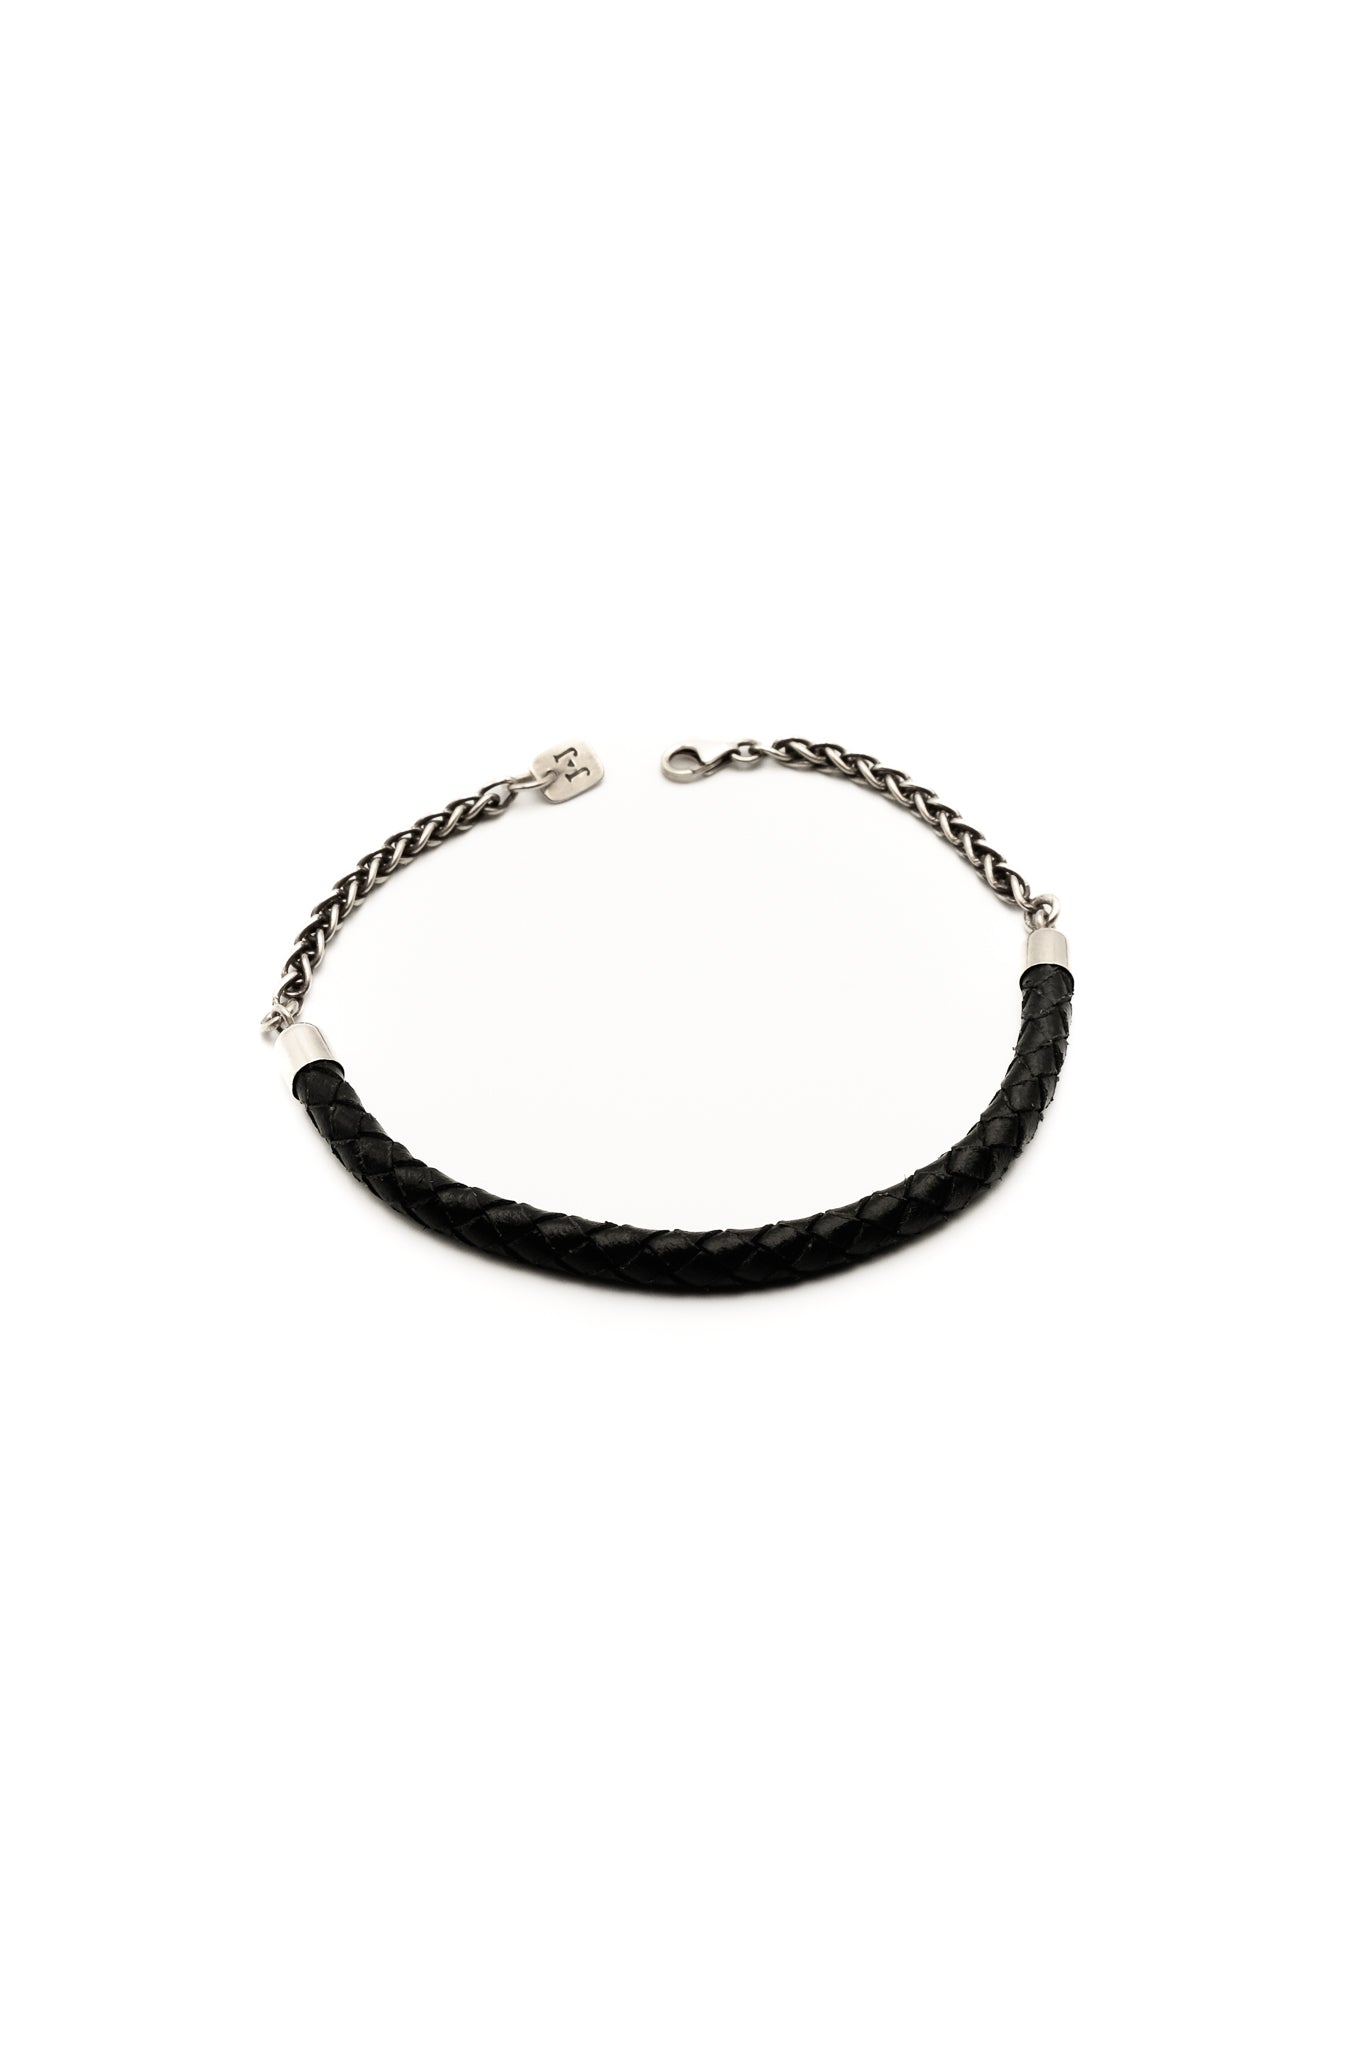 Wanderer Bracelet with Black Leather